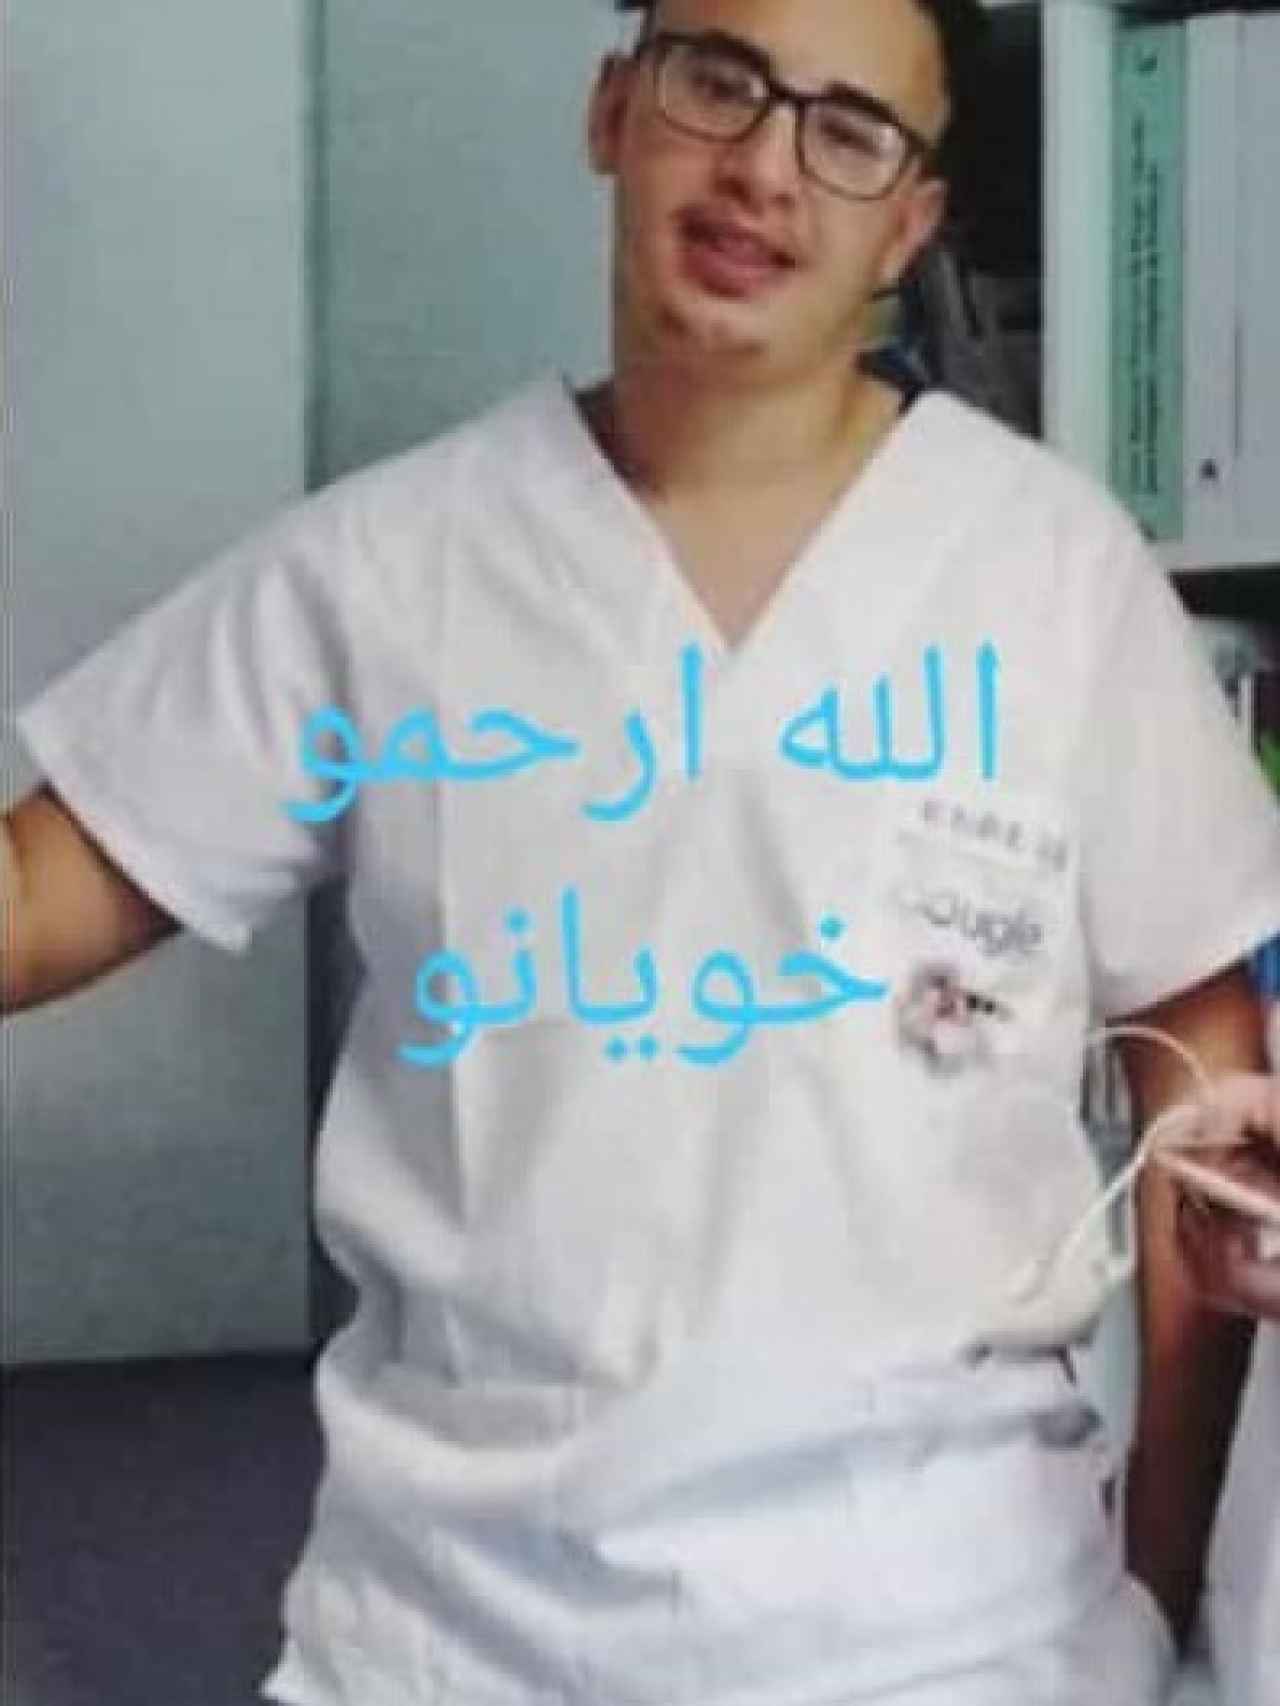 Una imagen de Khalid que se ha viralizado entre la población marroquí donde piden que Allah le cuide.